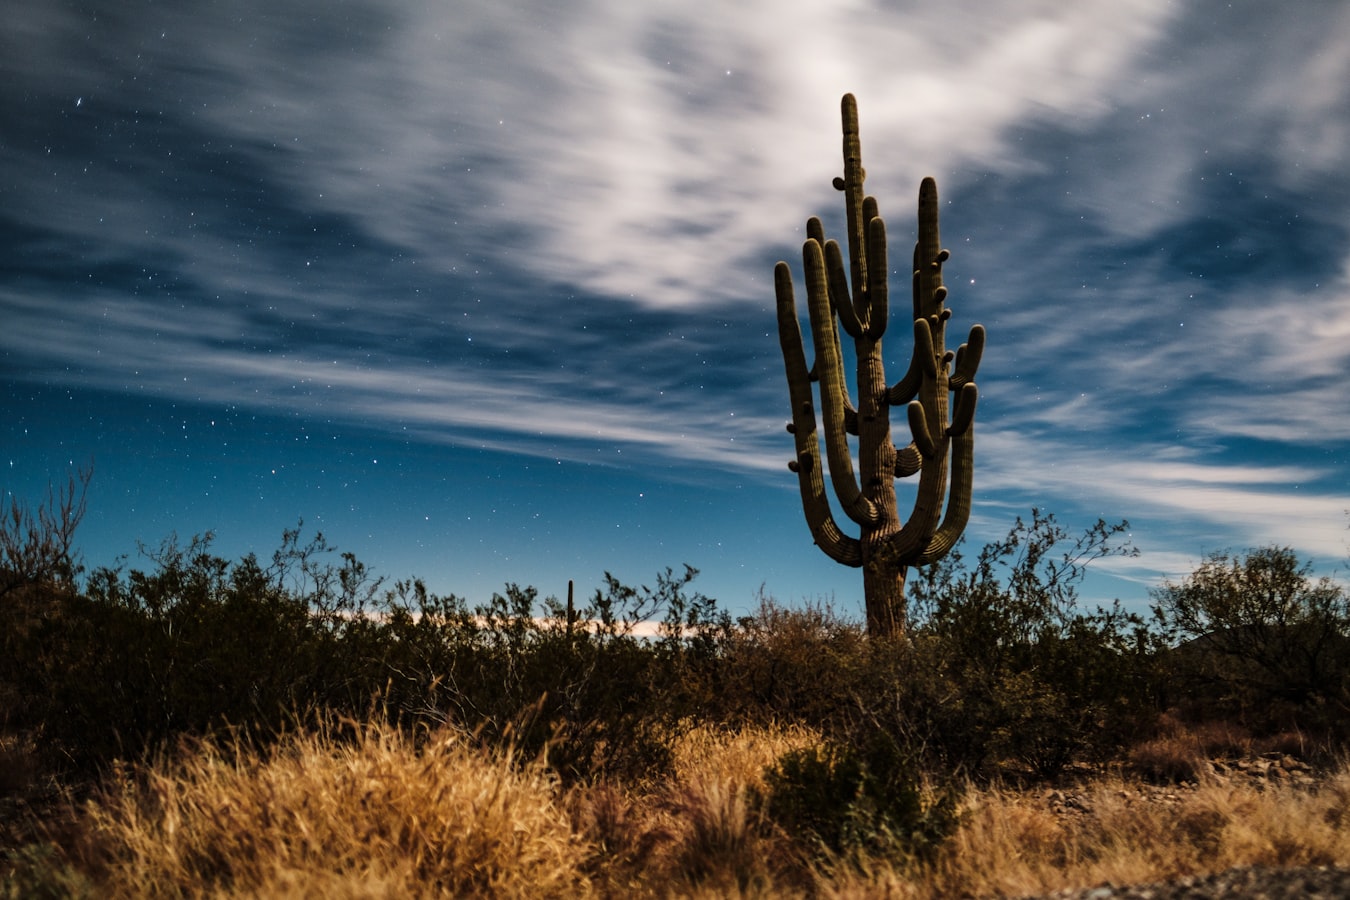 cactus during a sunset in Tucson, Arizona